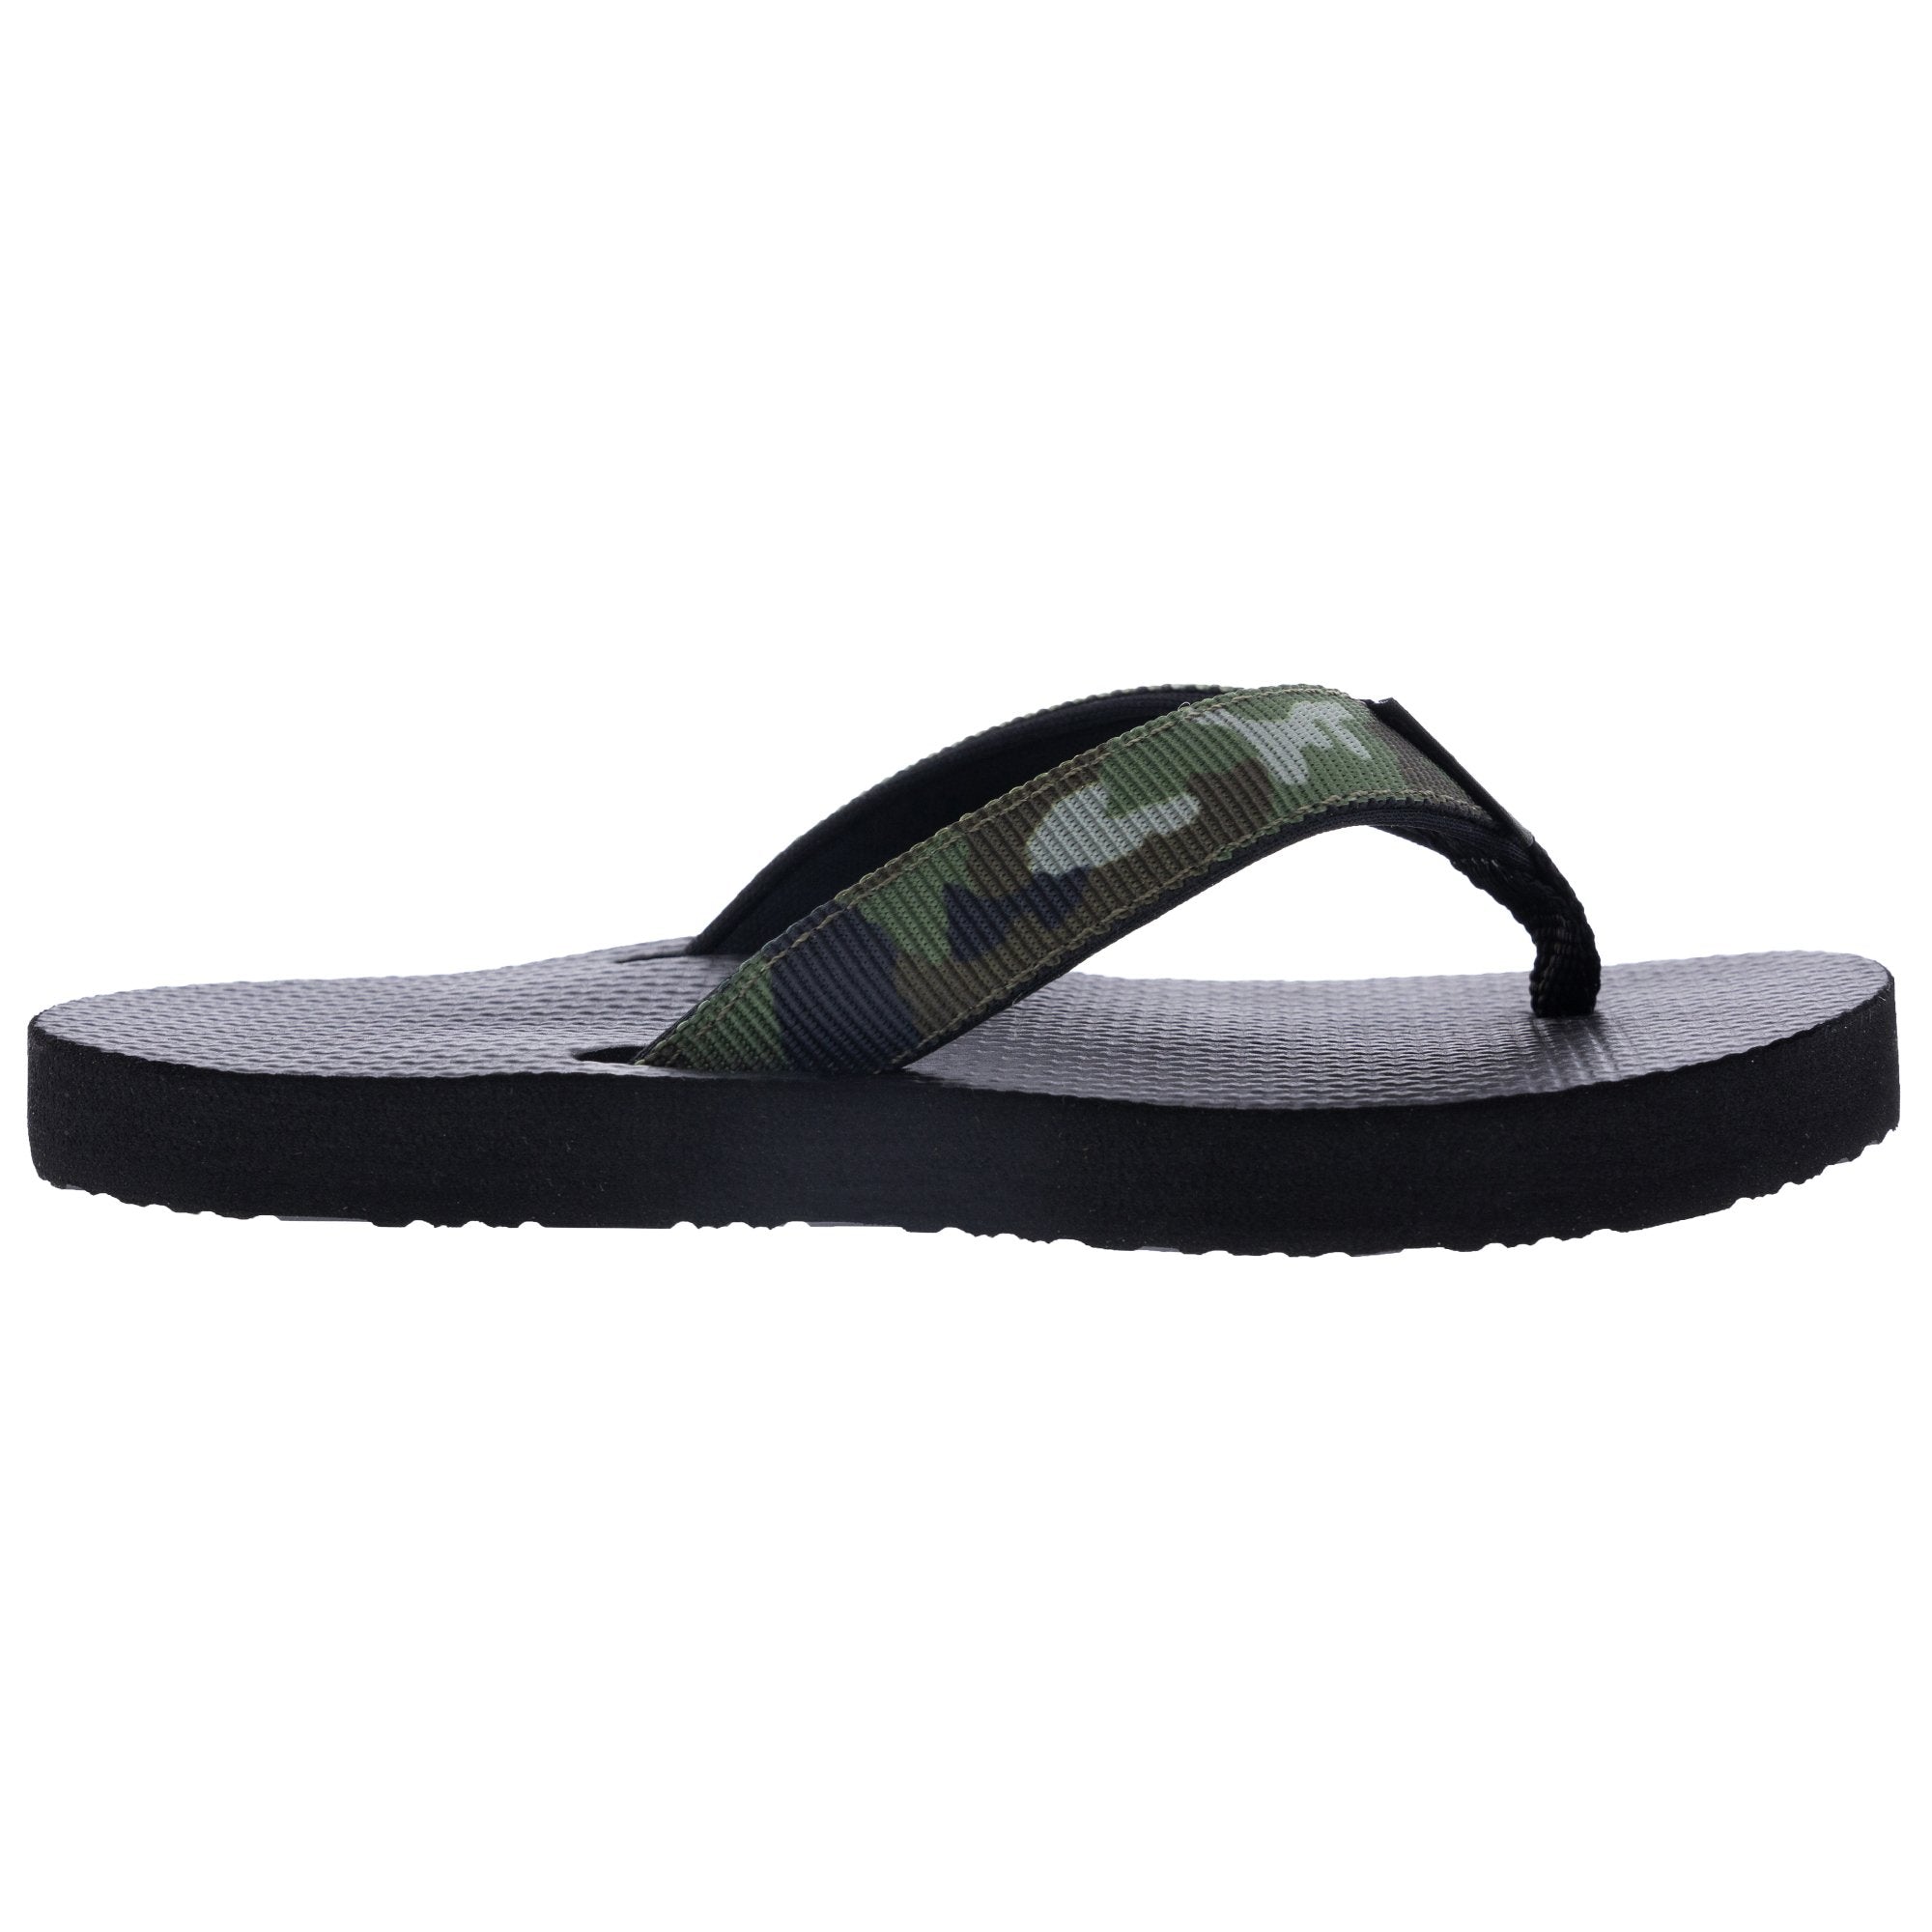 Scott Kids Aukai Military Camo Designed Sandals